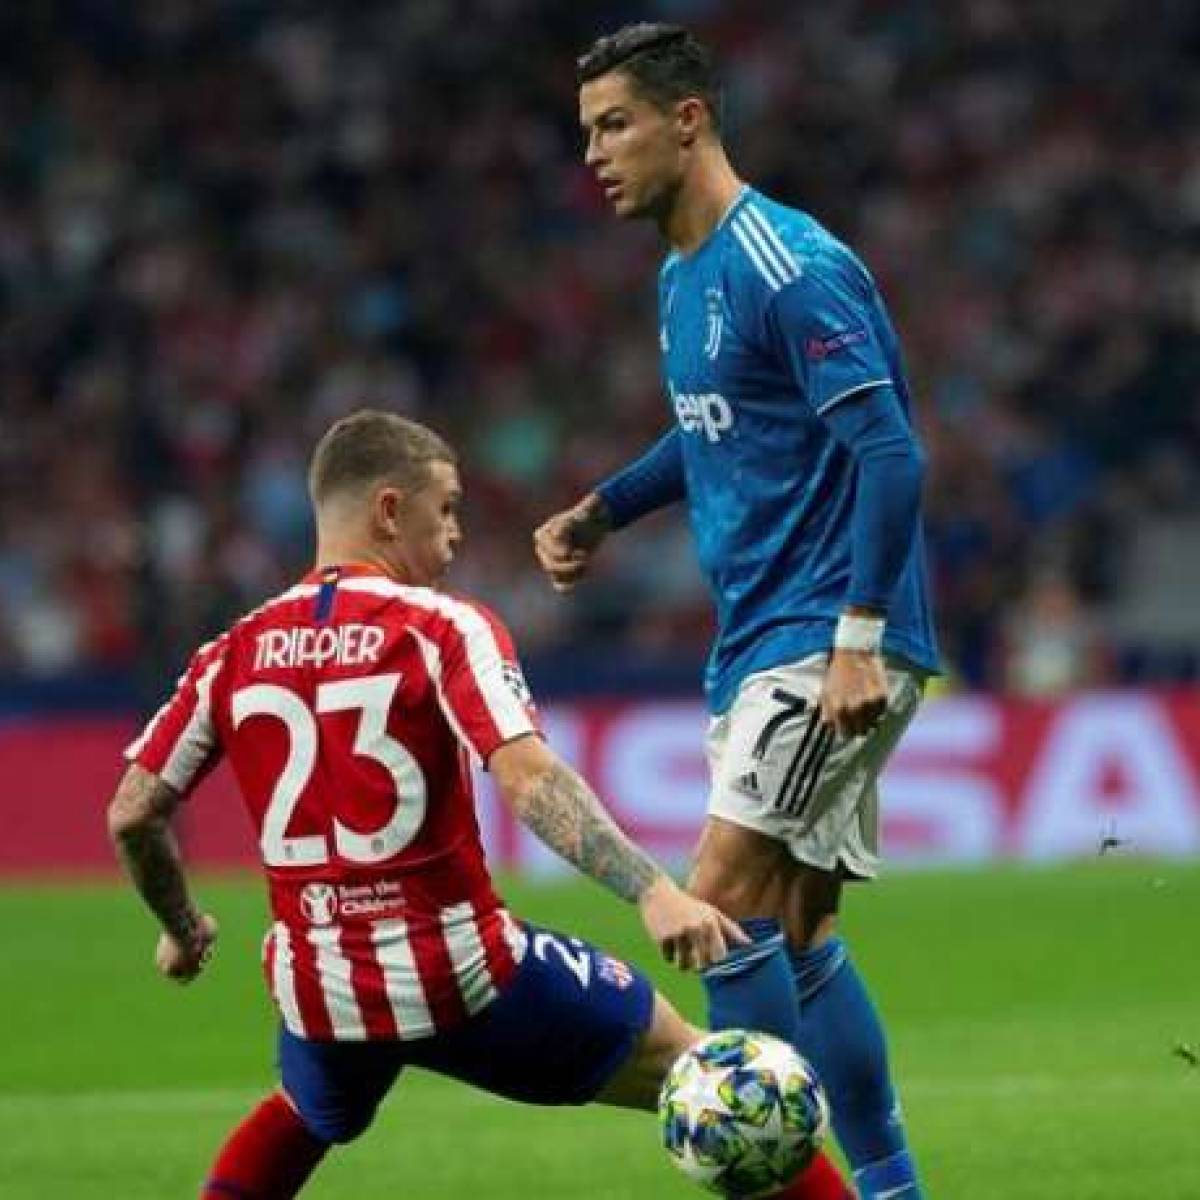 Cristiano, une machine à buts face à l'Atlético Madrid